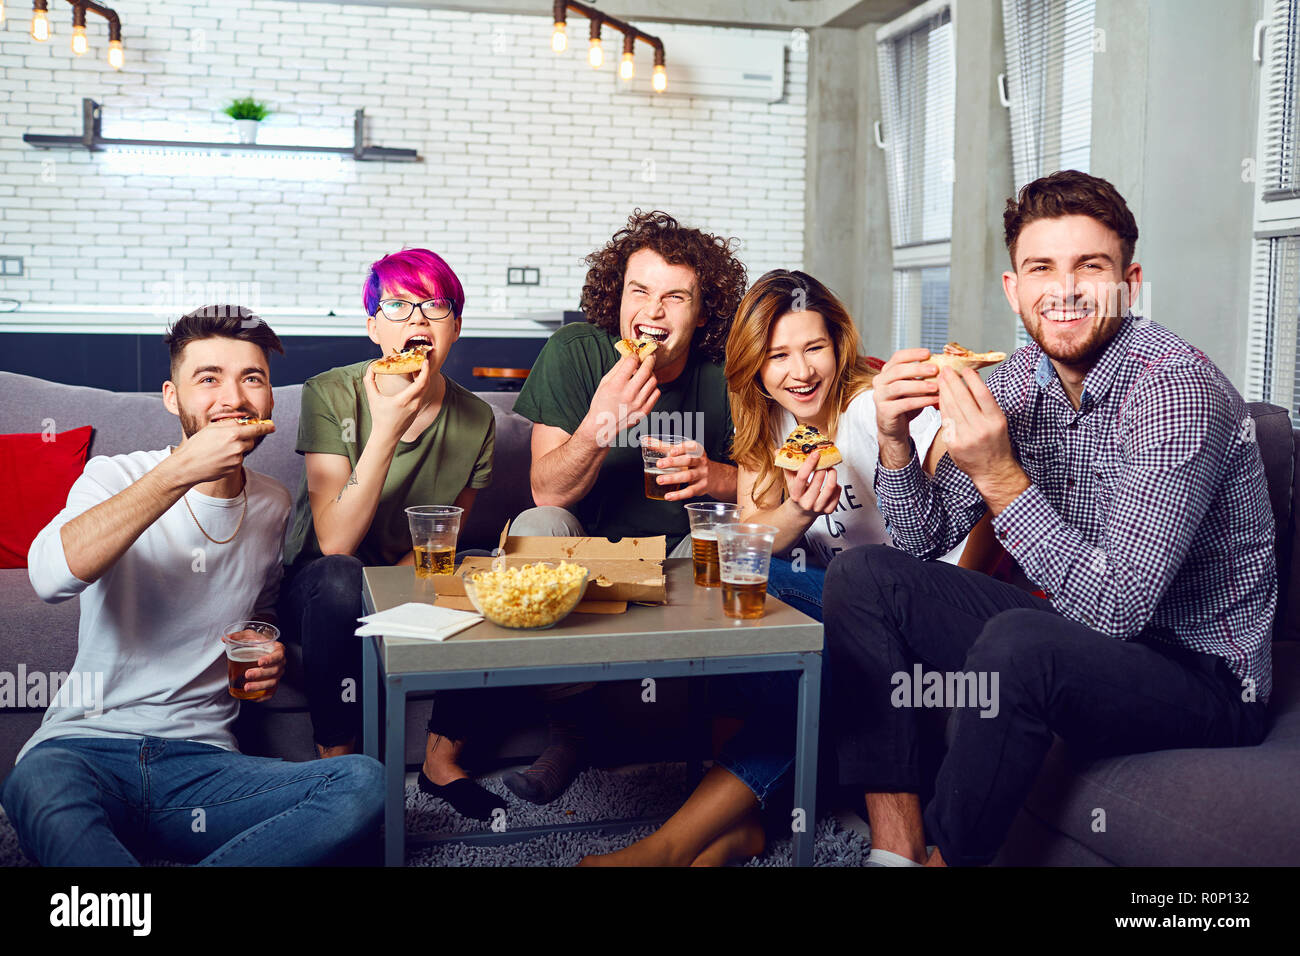 Eine Gruppe von Freunden essen Pizza wathing tv Sitzen auf der Couch. Stockfoto